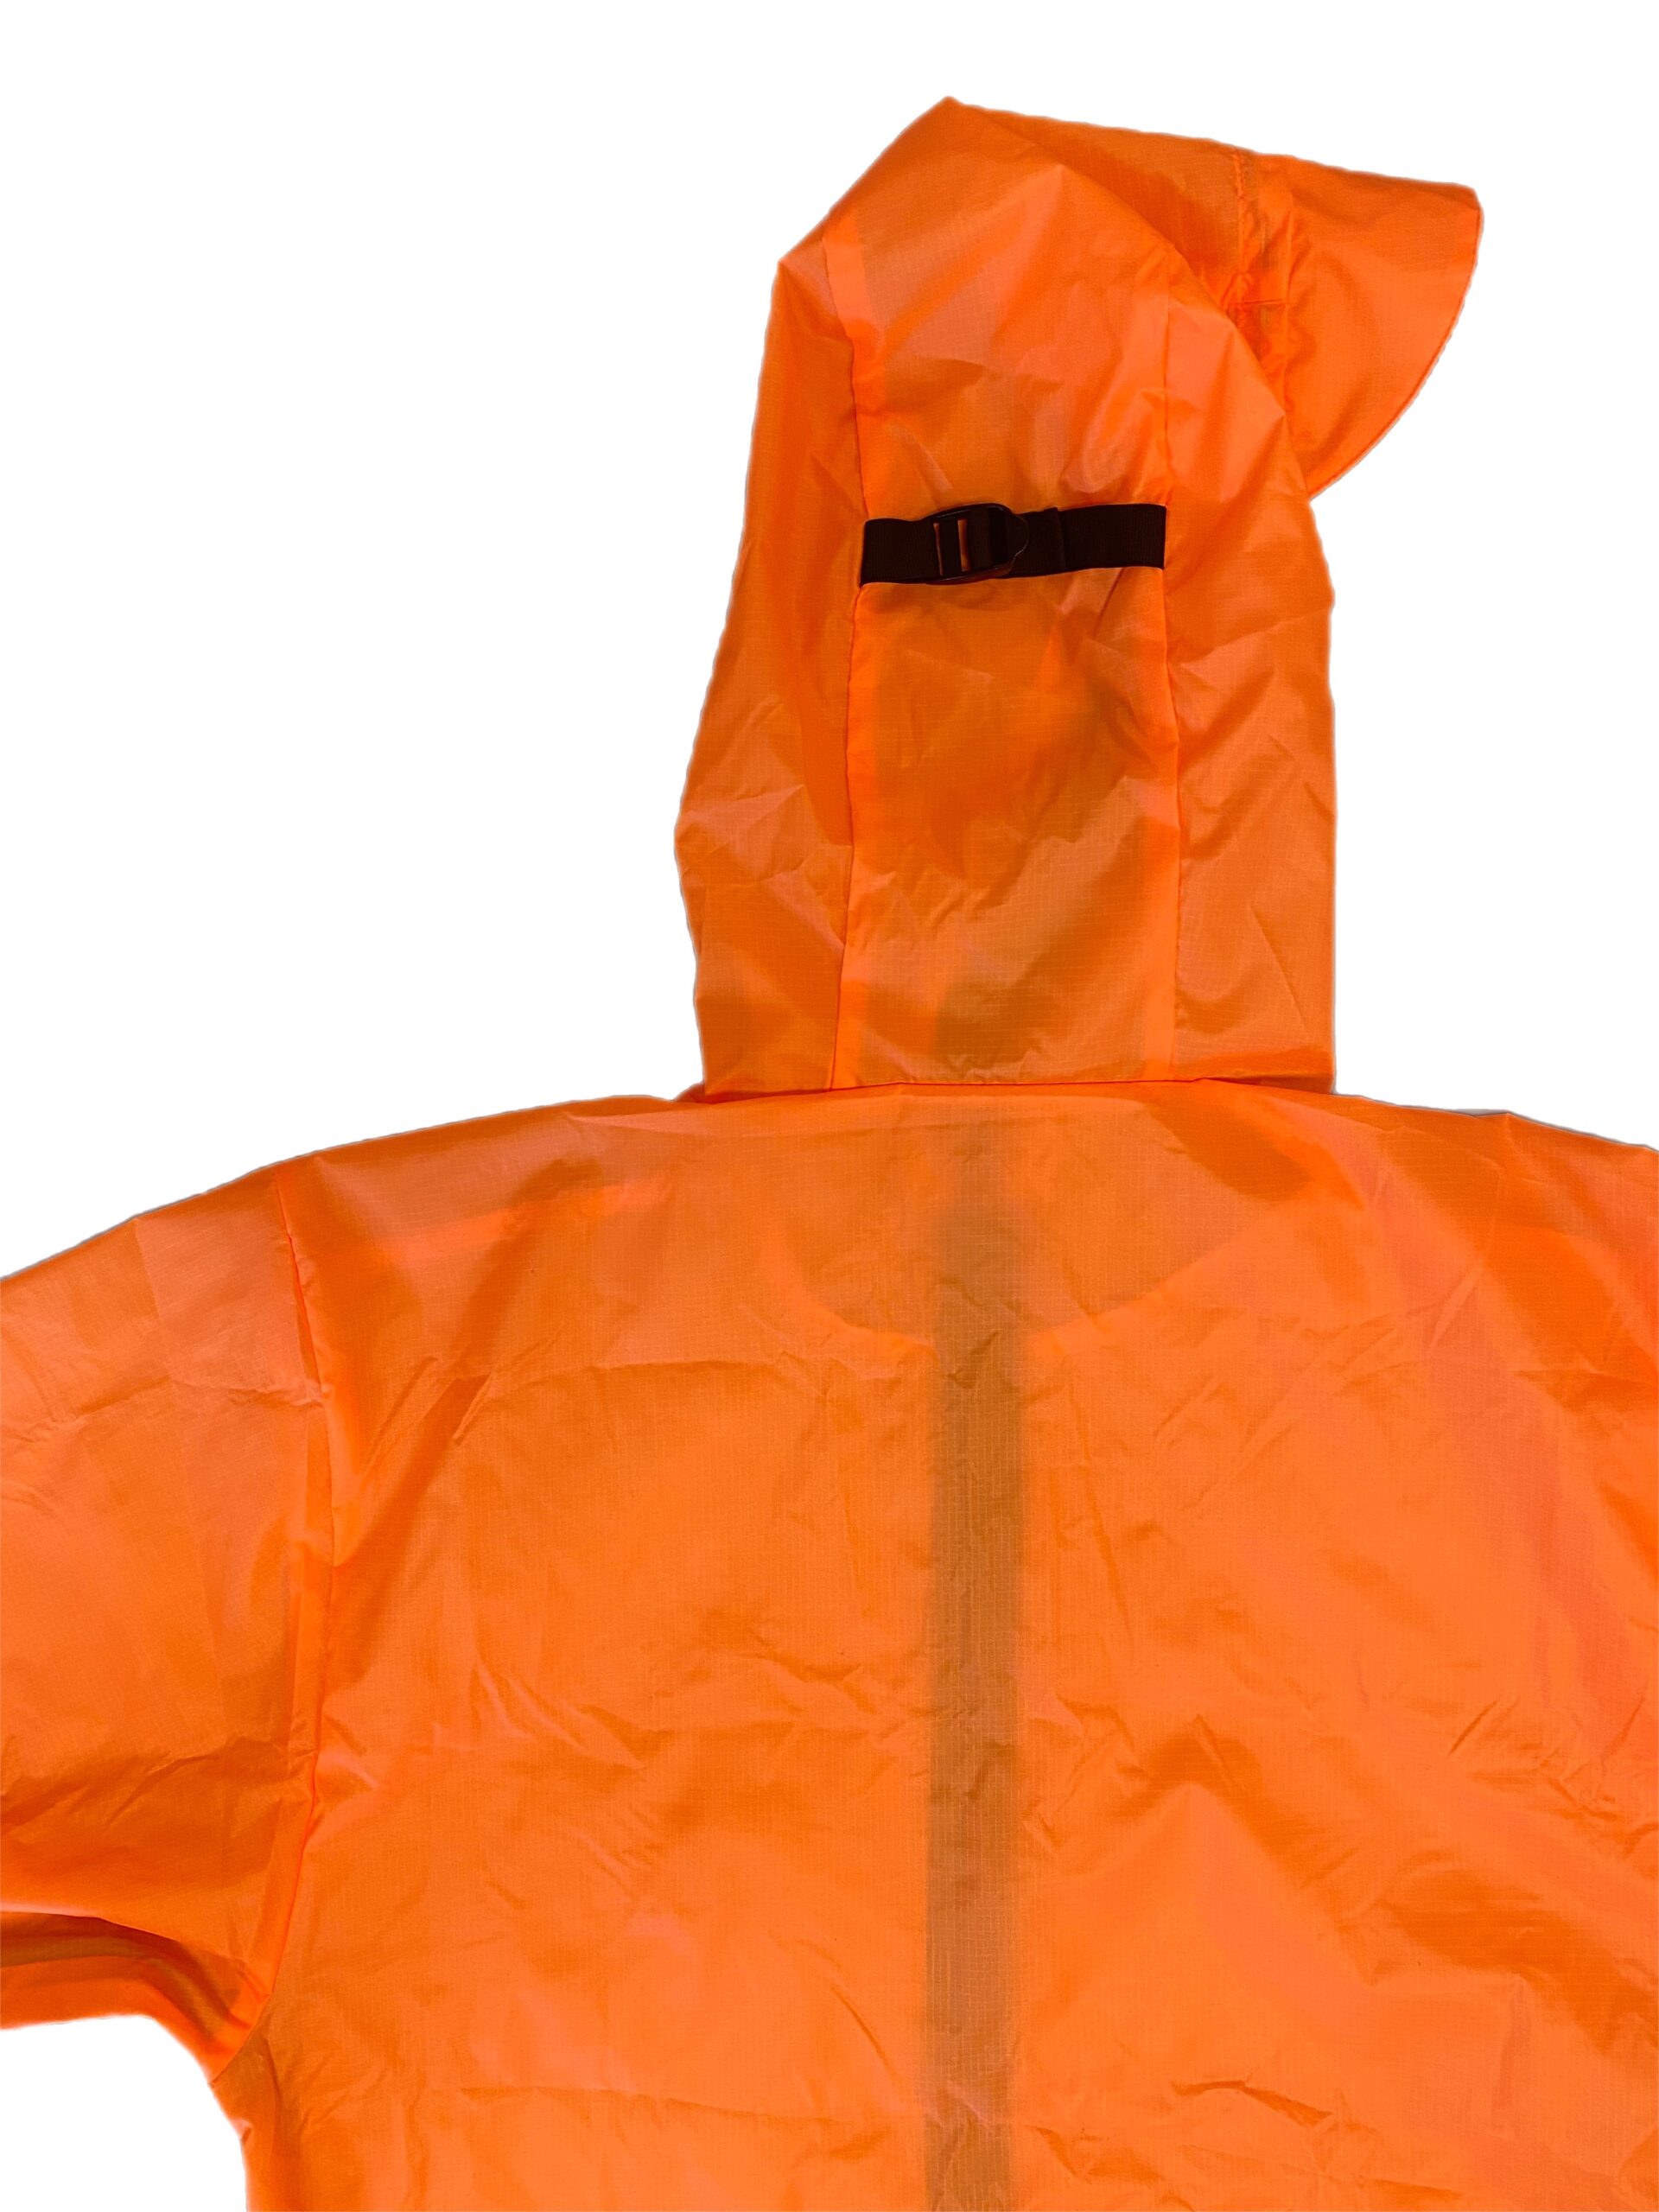 AntiGravityGear Ultralight Rain Jacket w/ Pit Zips